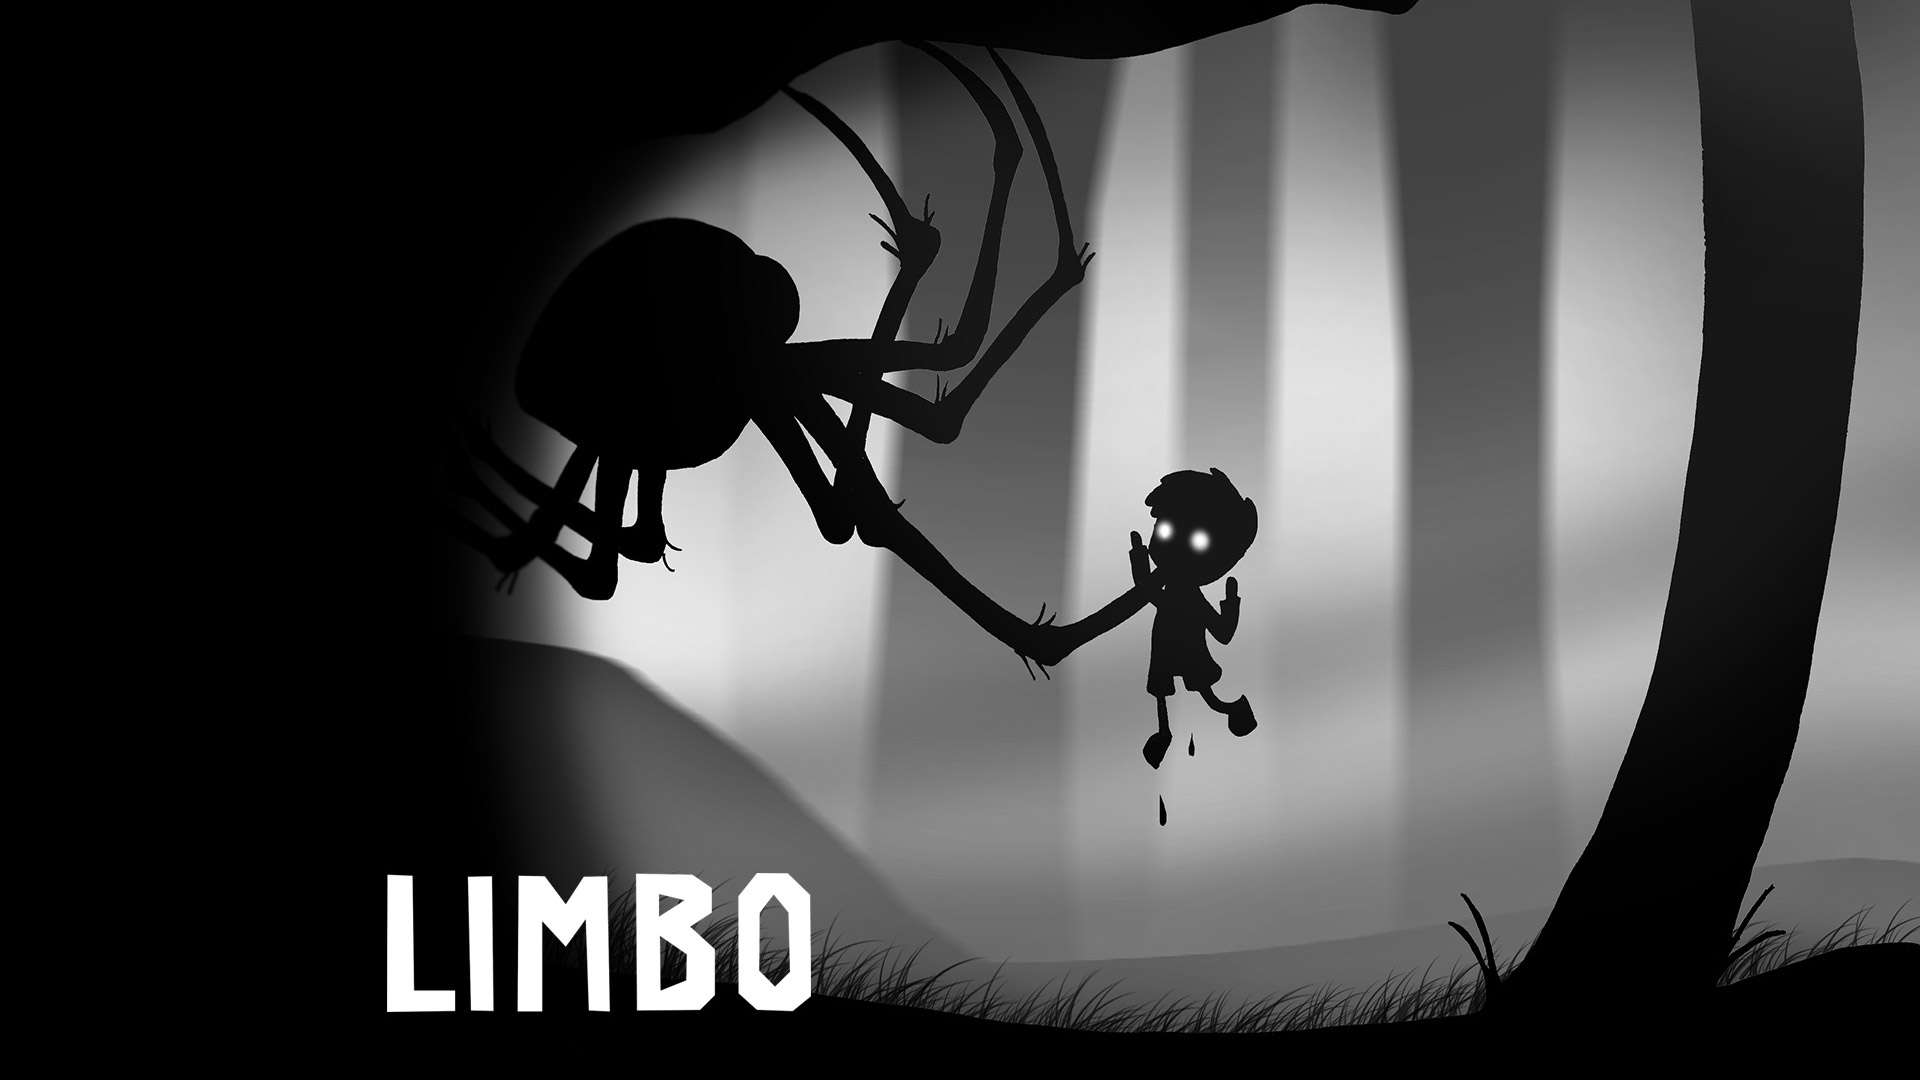 Już ponad 250 gier dostępnych we wstecznej kompatybilności na XOne - ostatnia nowość to Limbo